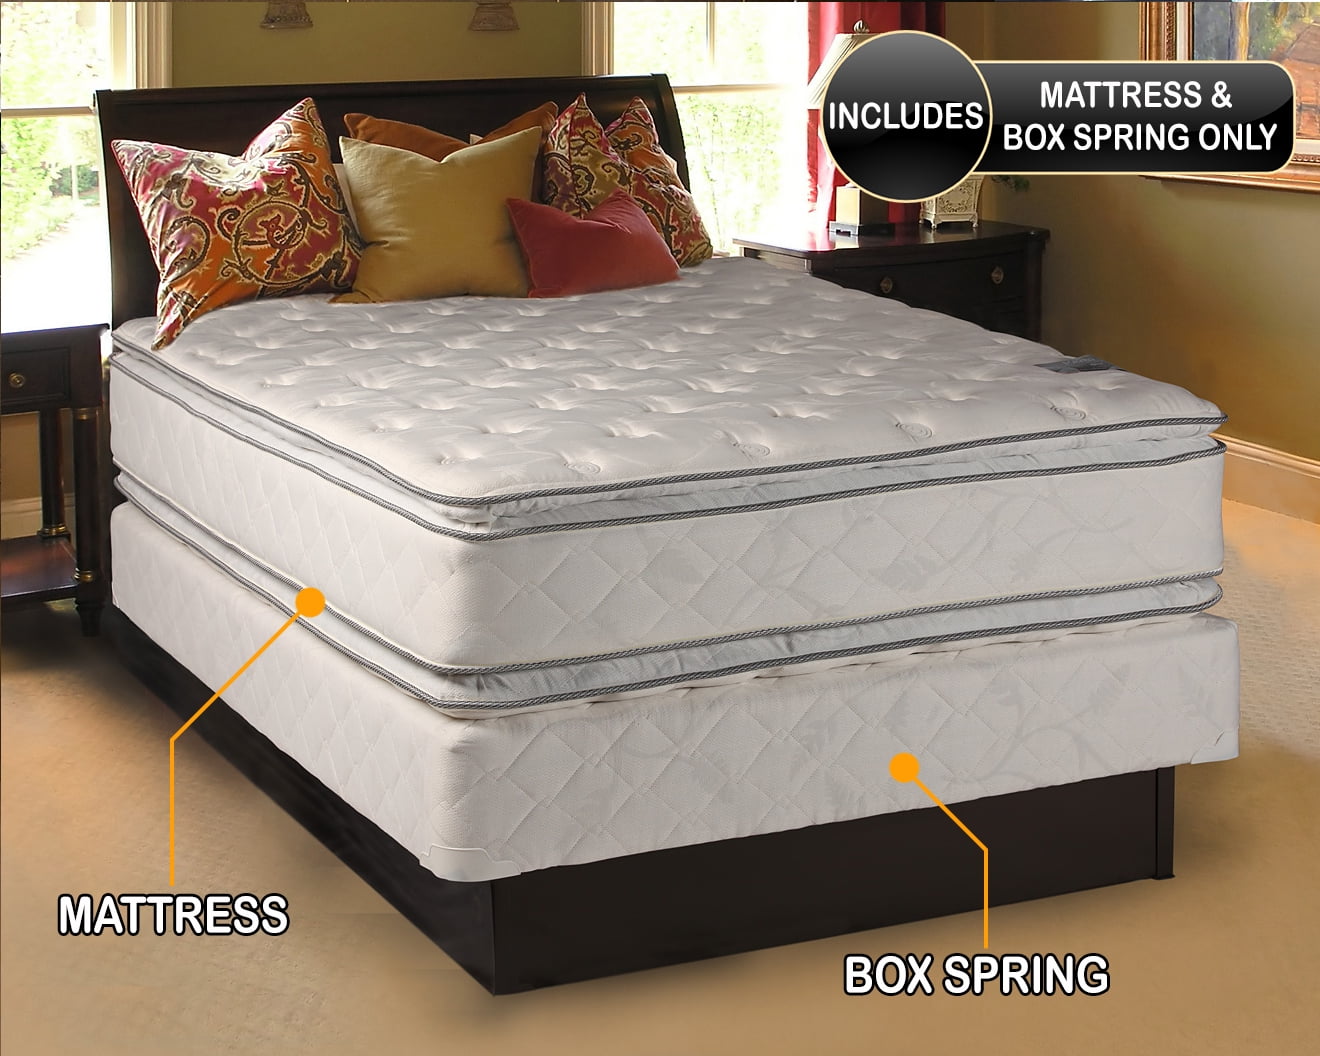 Natural sleep Mattress and Box Spring Set (Queen - 60"x80"x12